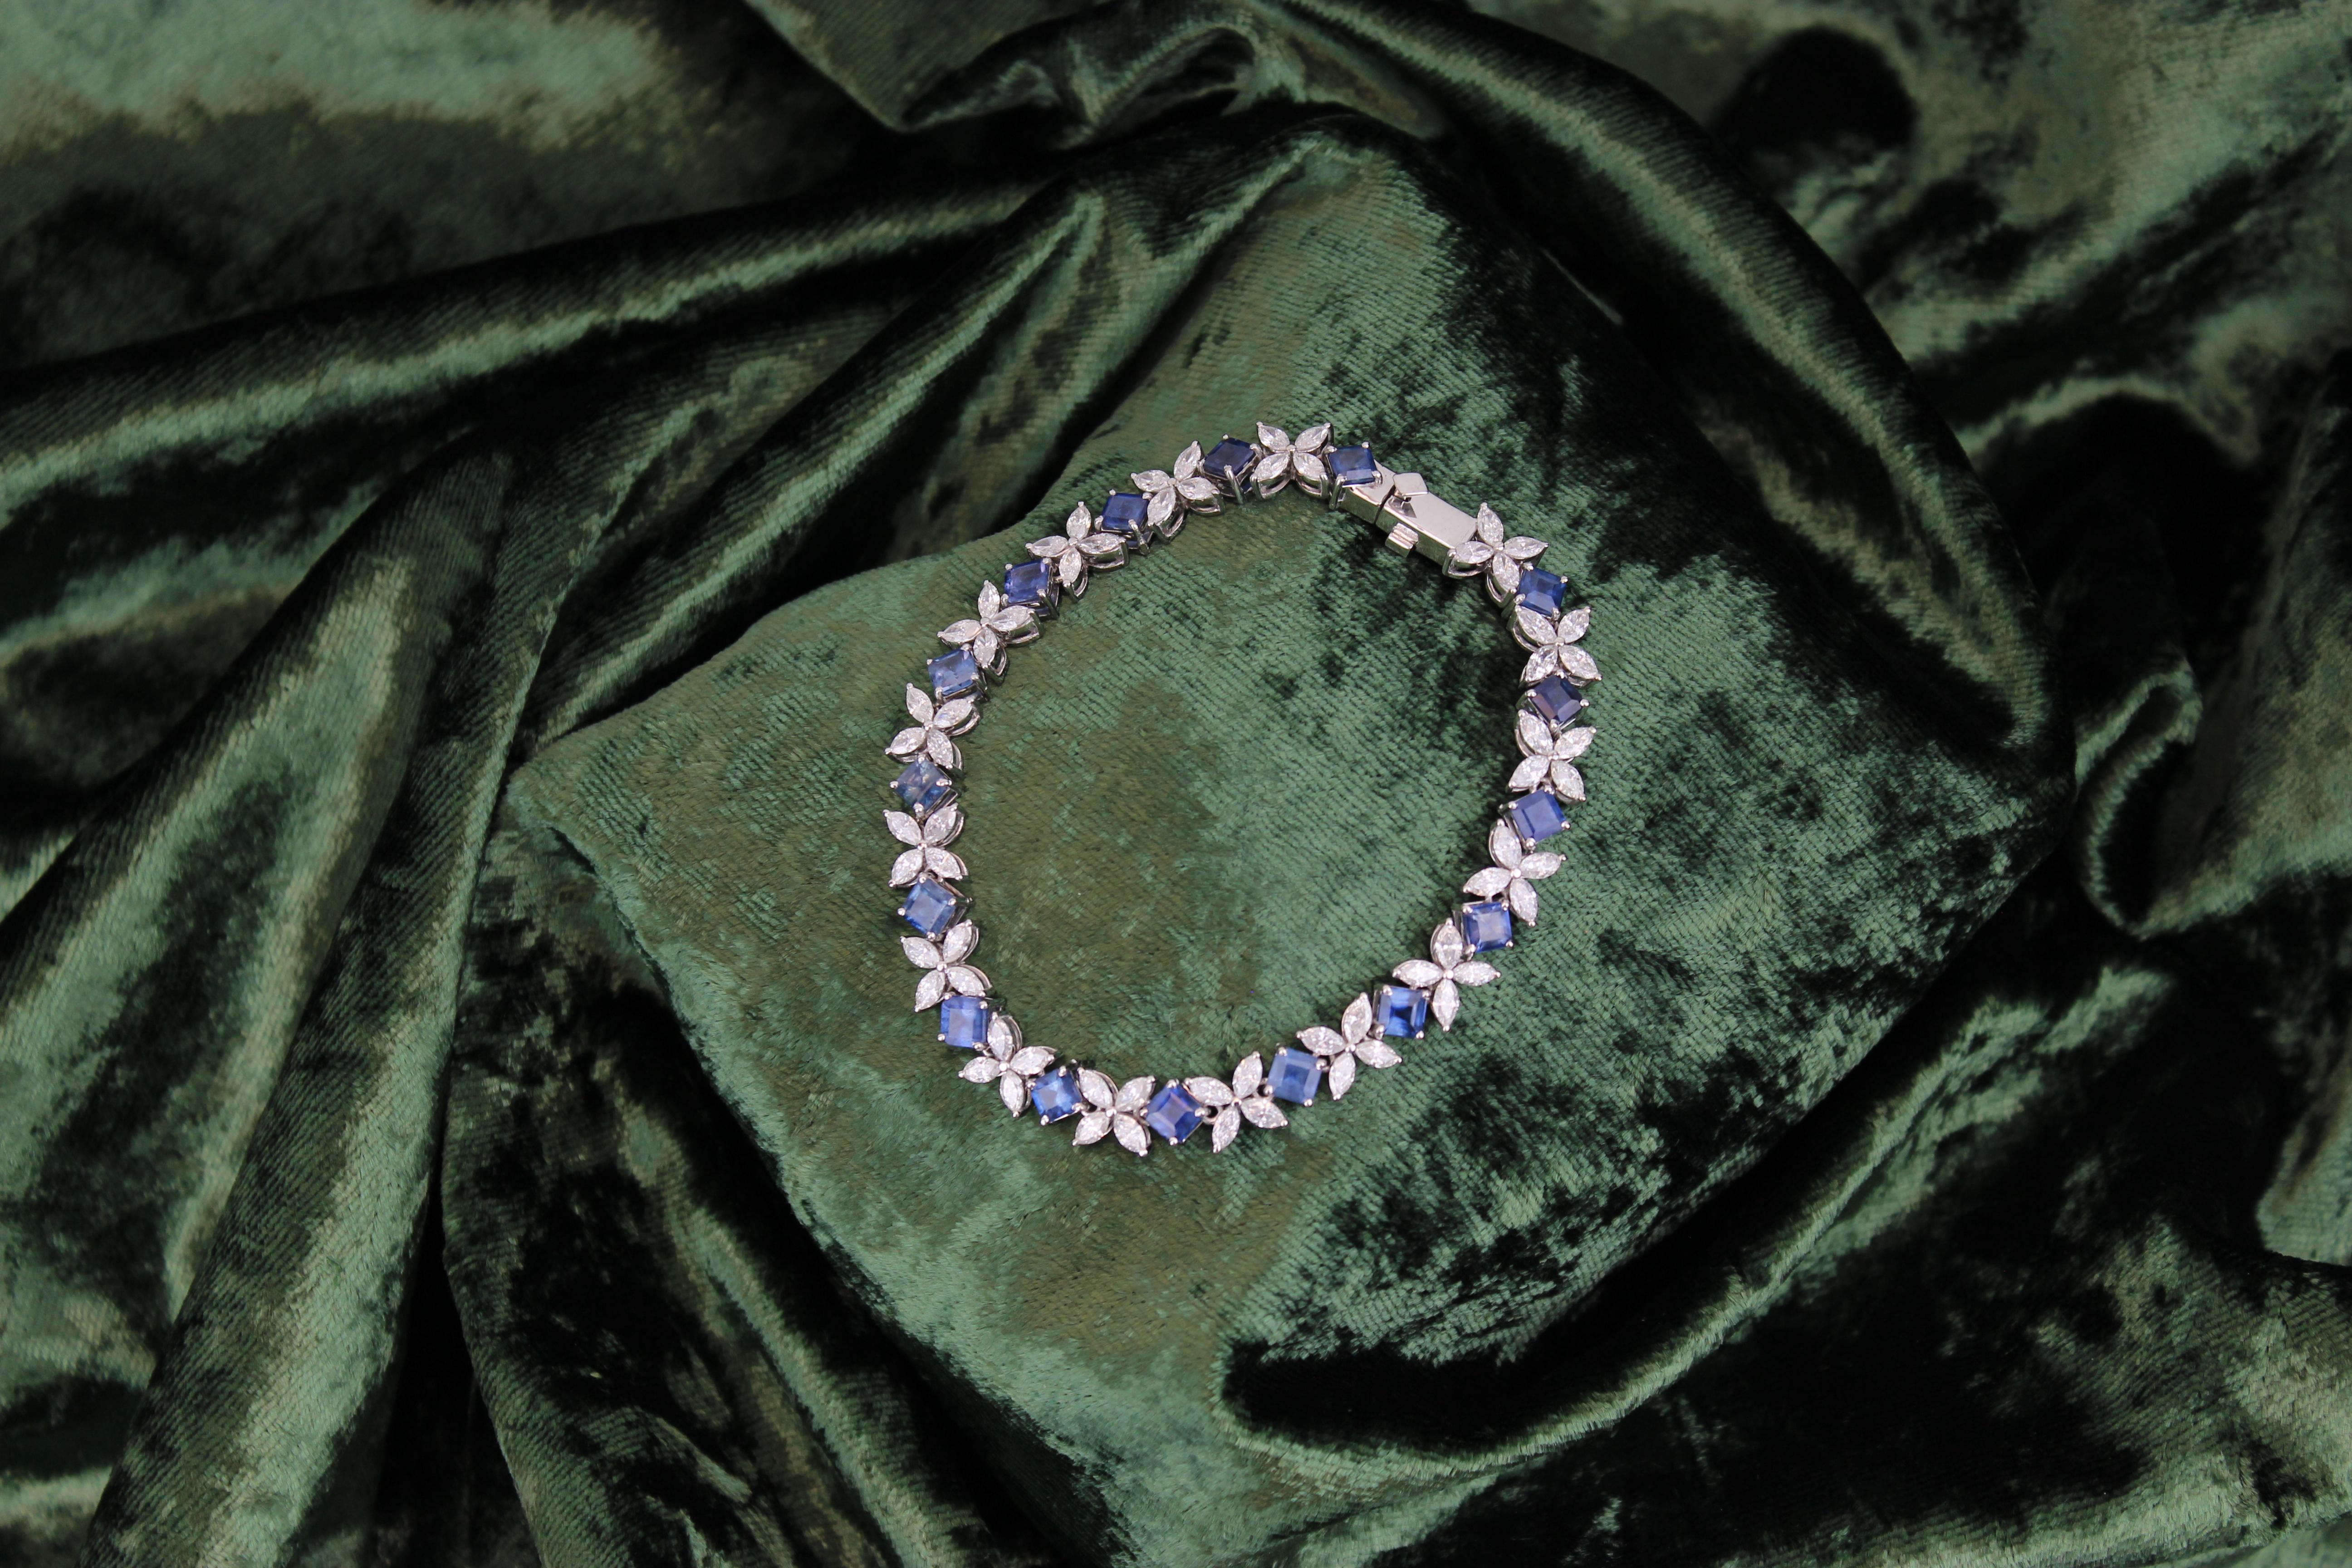 Das florale Design Marquise Diamond Tennis Bracelet mit Natural Princess Cut Blue Sapphire ist ein exquisites Schmuckstück in 18k massivem Gold gefertigt. Er besteht aus einer Kombination von Diamanten im Marquise-Schliff und Saphiren im